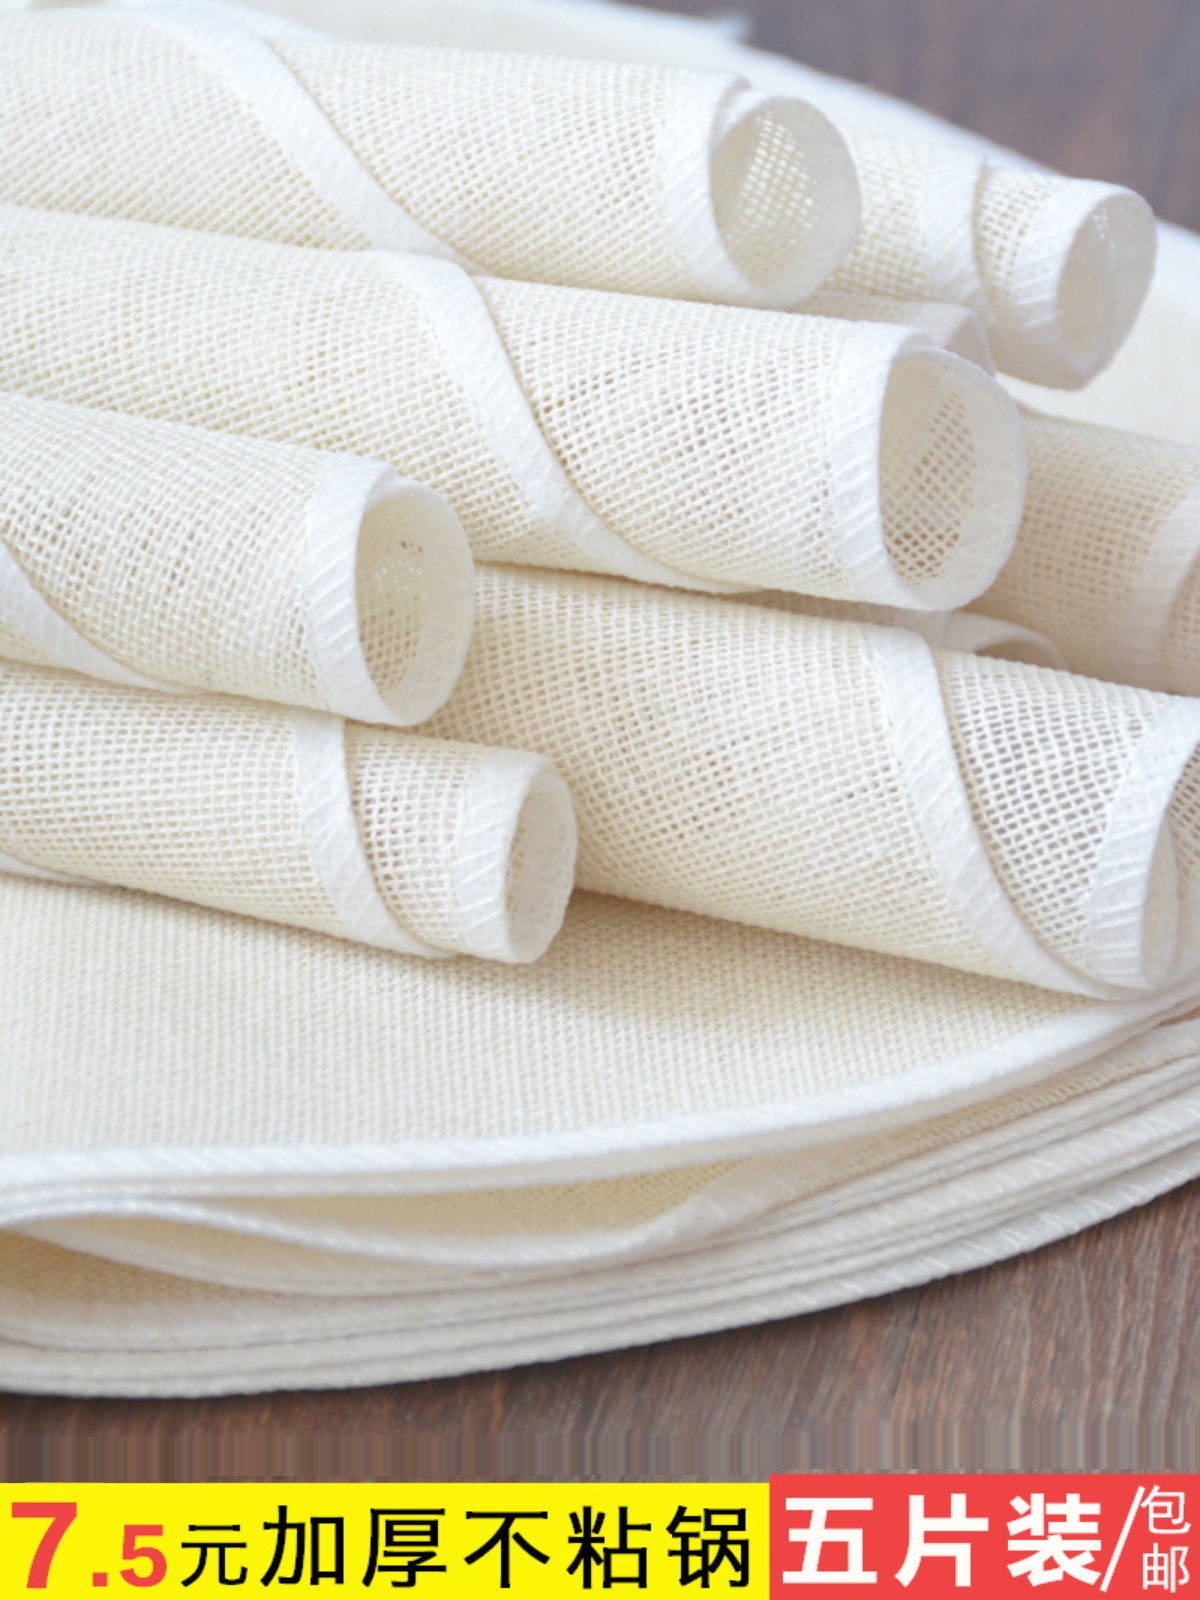 蒸锅粘布蒸饭用的沙布食品级不沾蒸笼布纱布蒸馒头垫圆形大